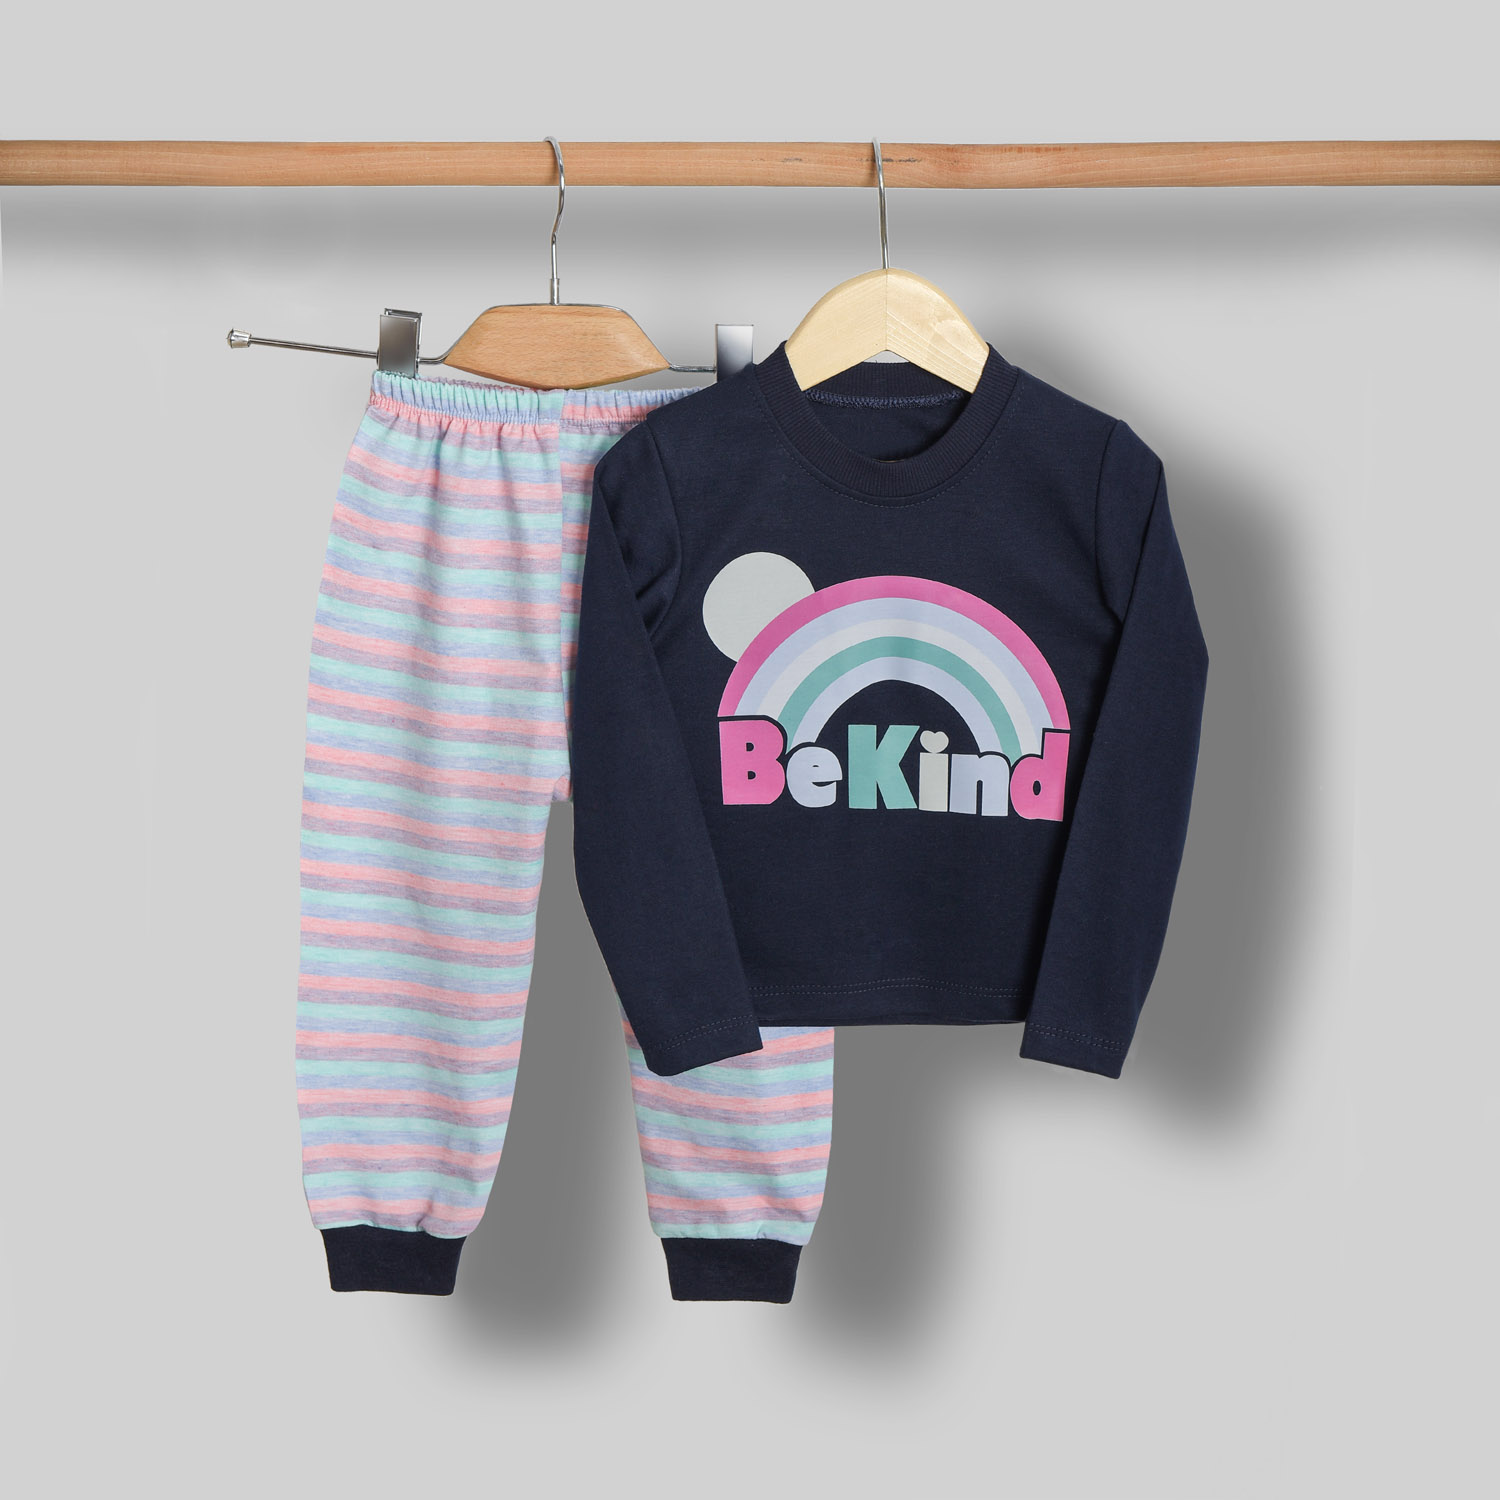 ست تی شرت آستین بلند و شلوار بچگانه سپیدپوش مدل Bekind کد 1402711 -  - 3